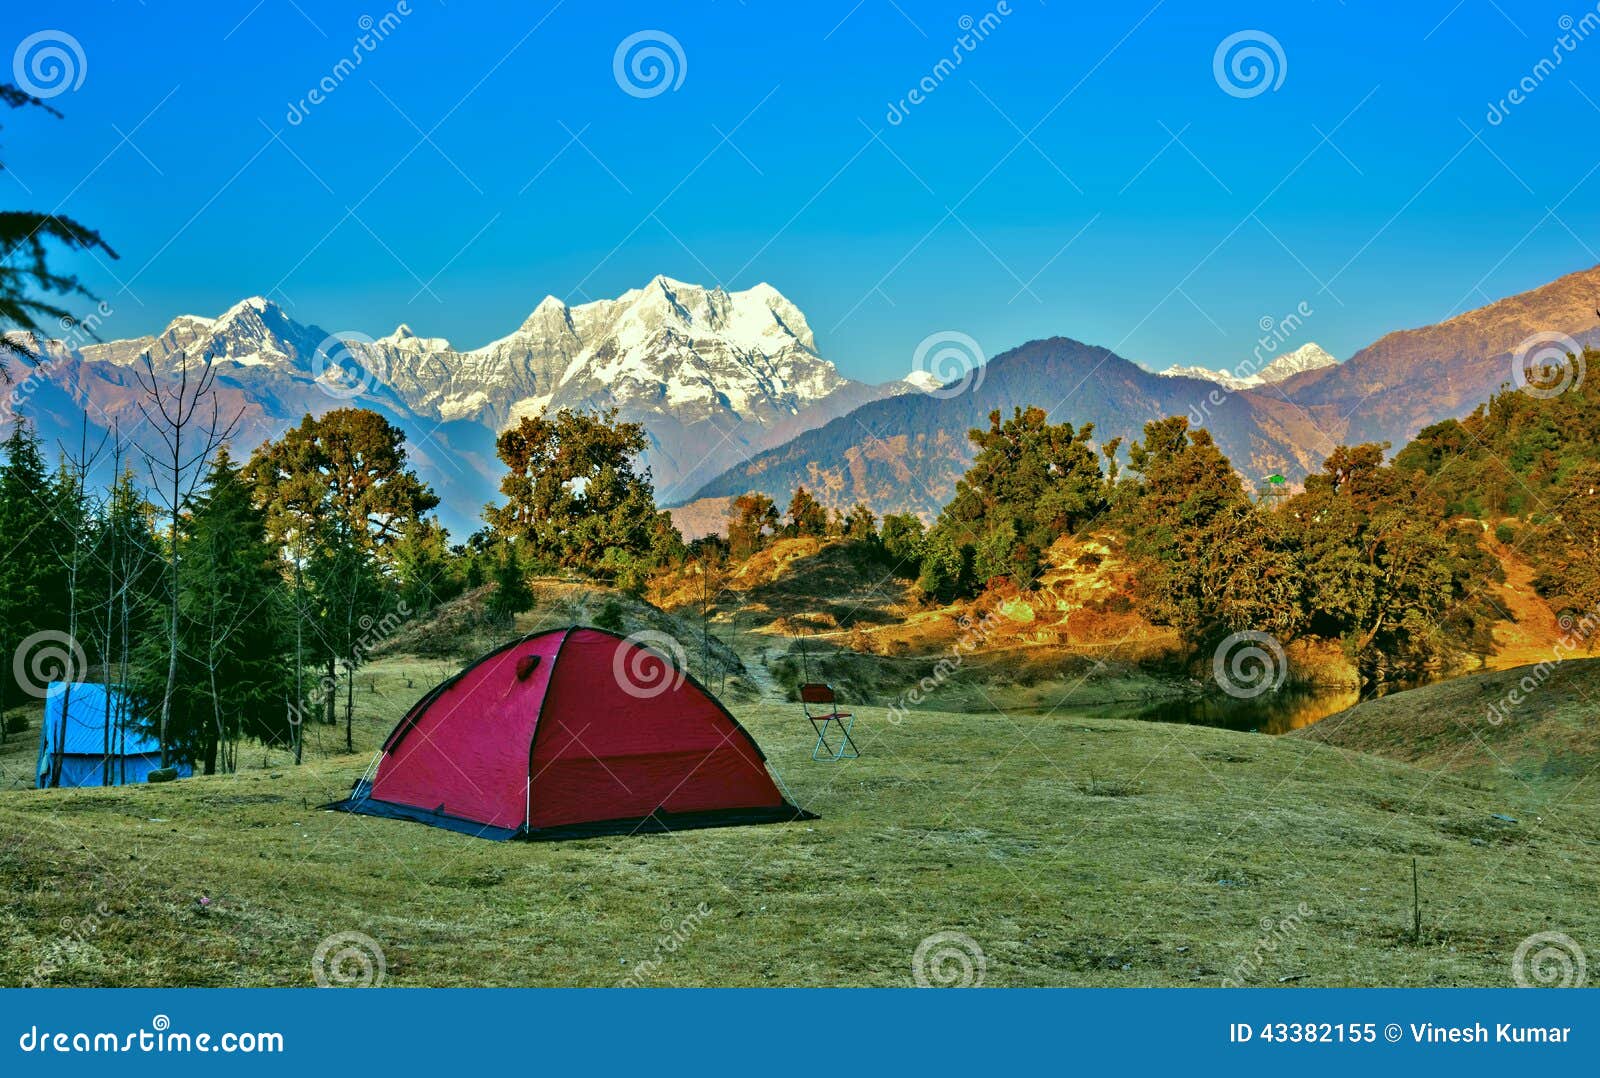 camping at himalayas